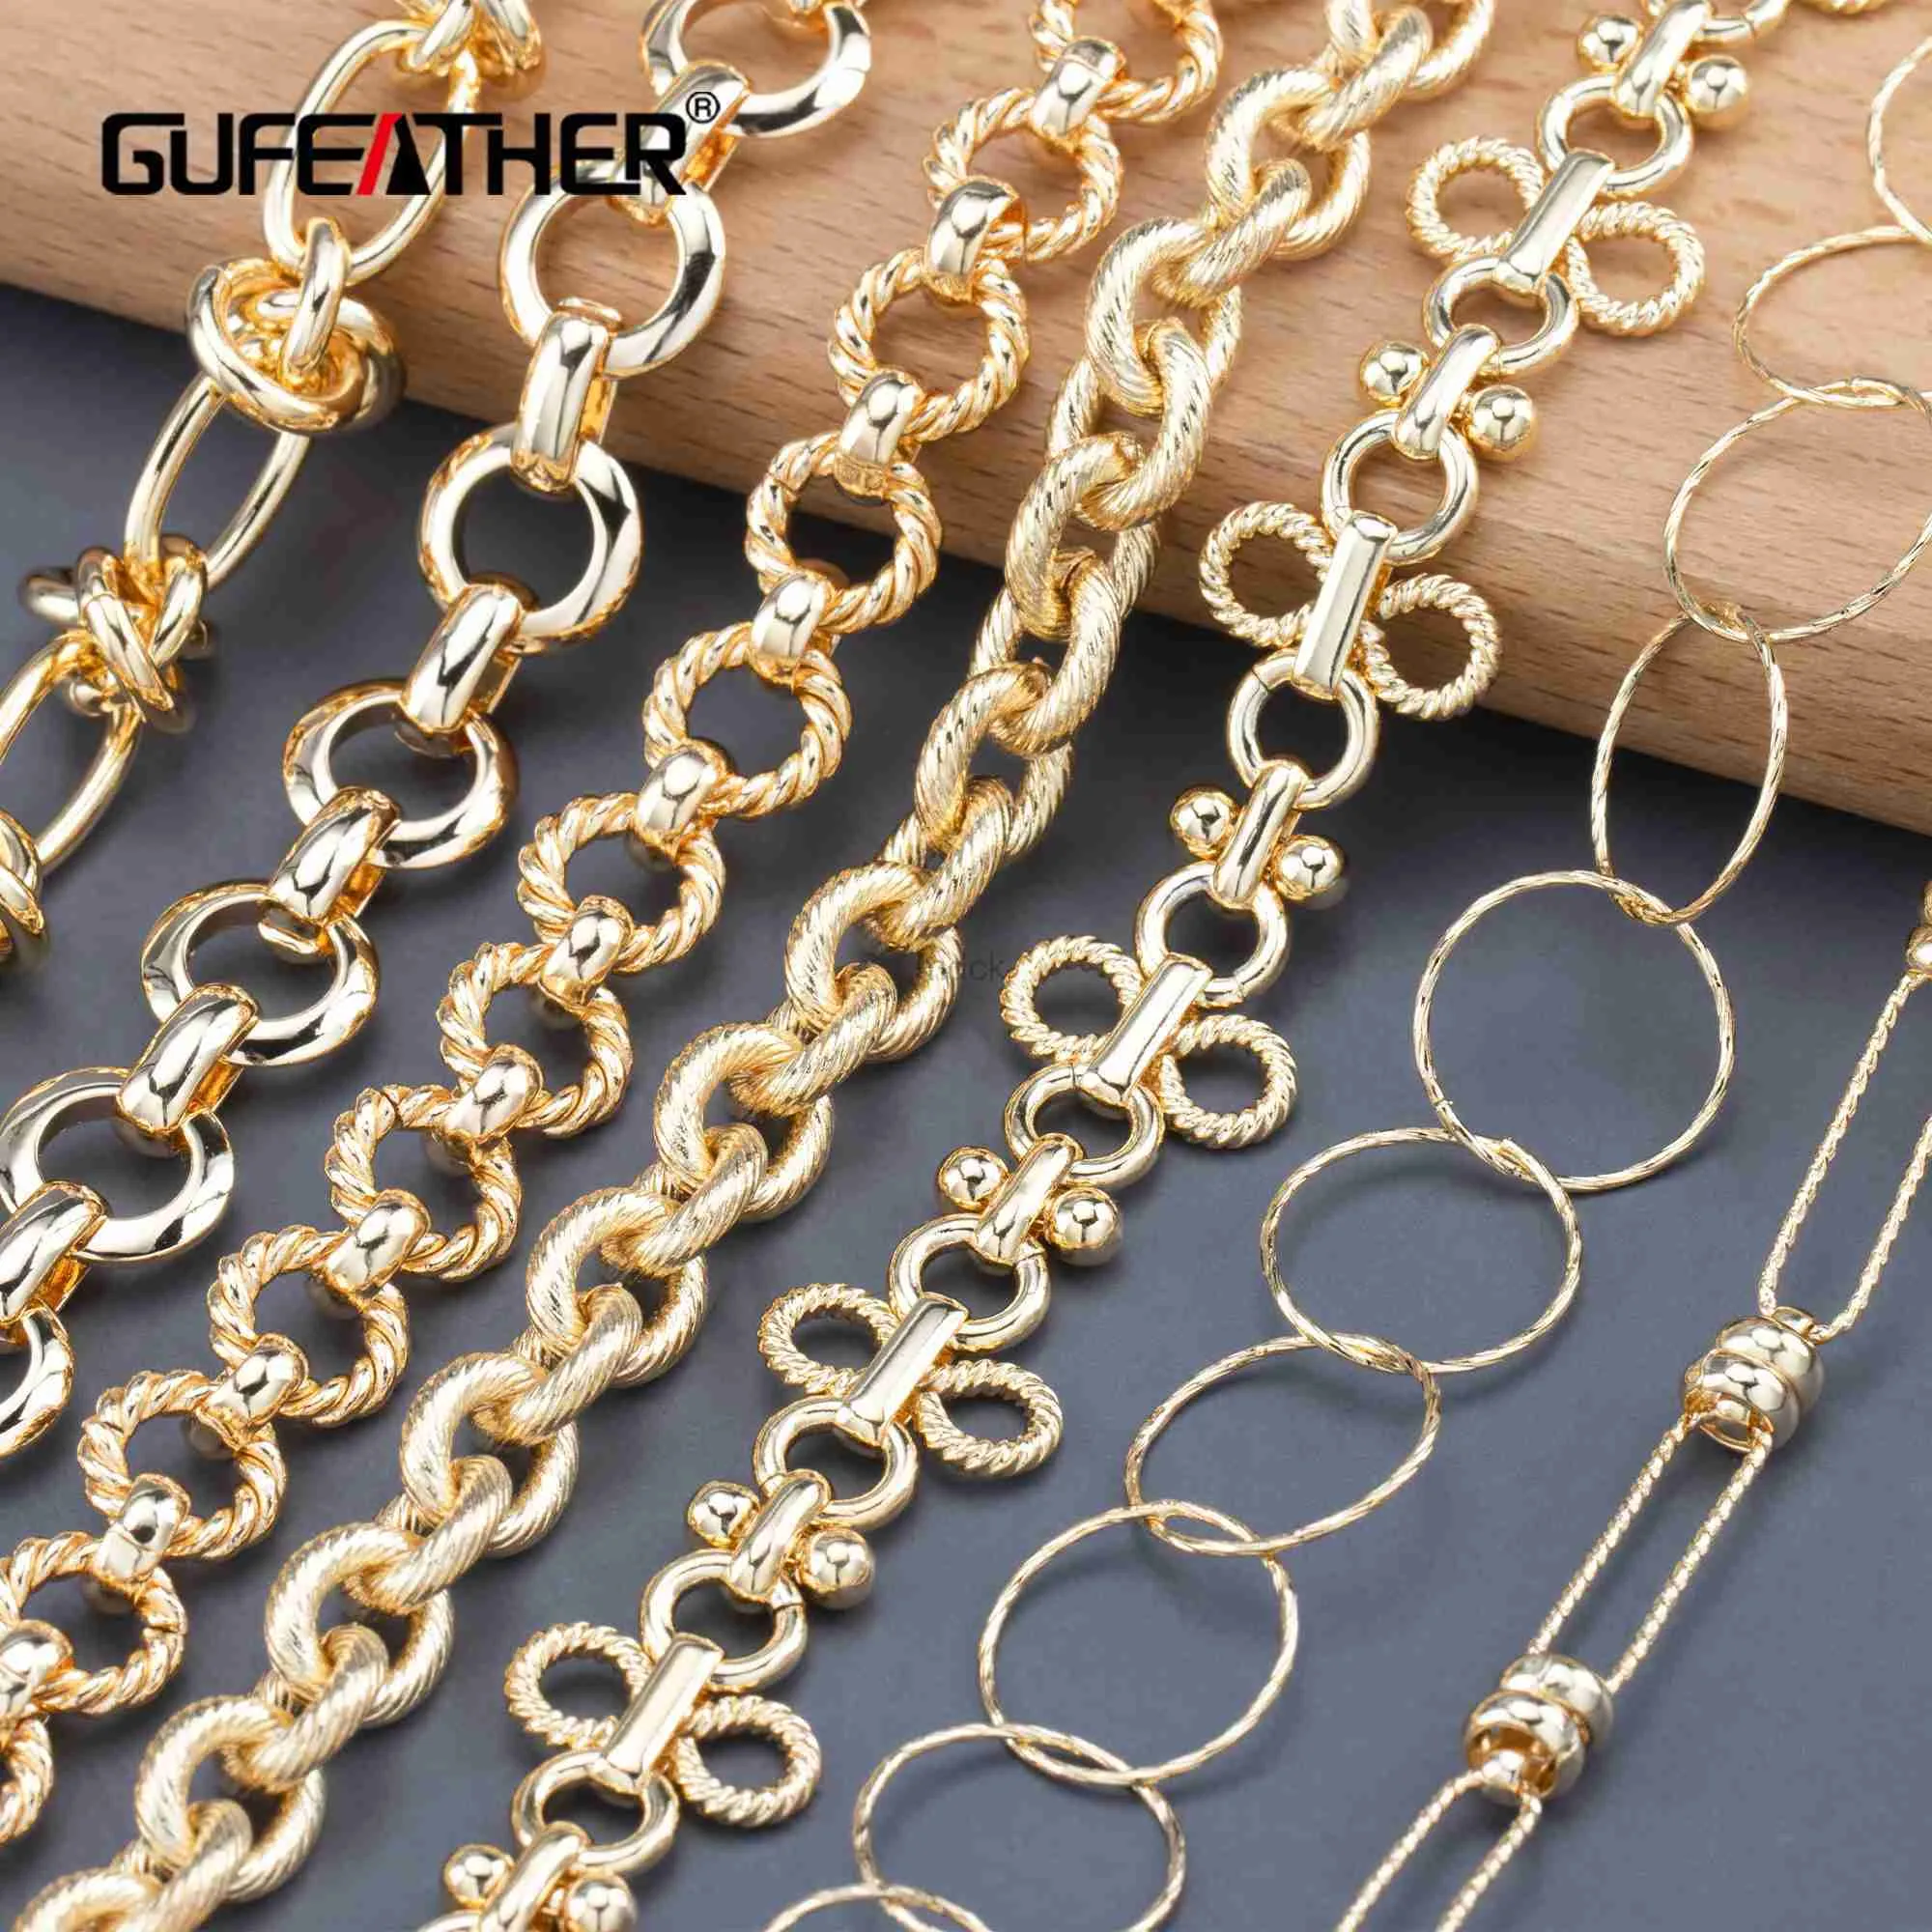 Collares colgantes Gufeather C170DIY Cadena Pass Reachnickel Free18K Gold Copper MetalCarmsdiy Pulsera Collar de colaboración